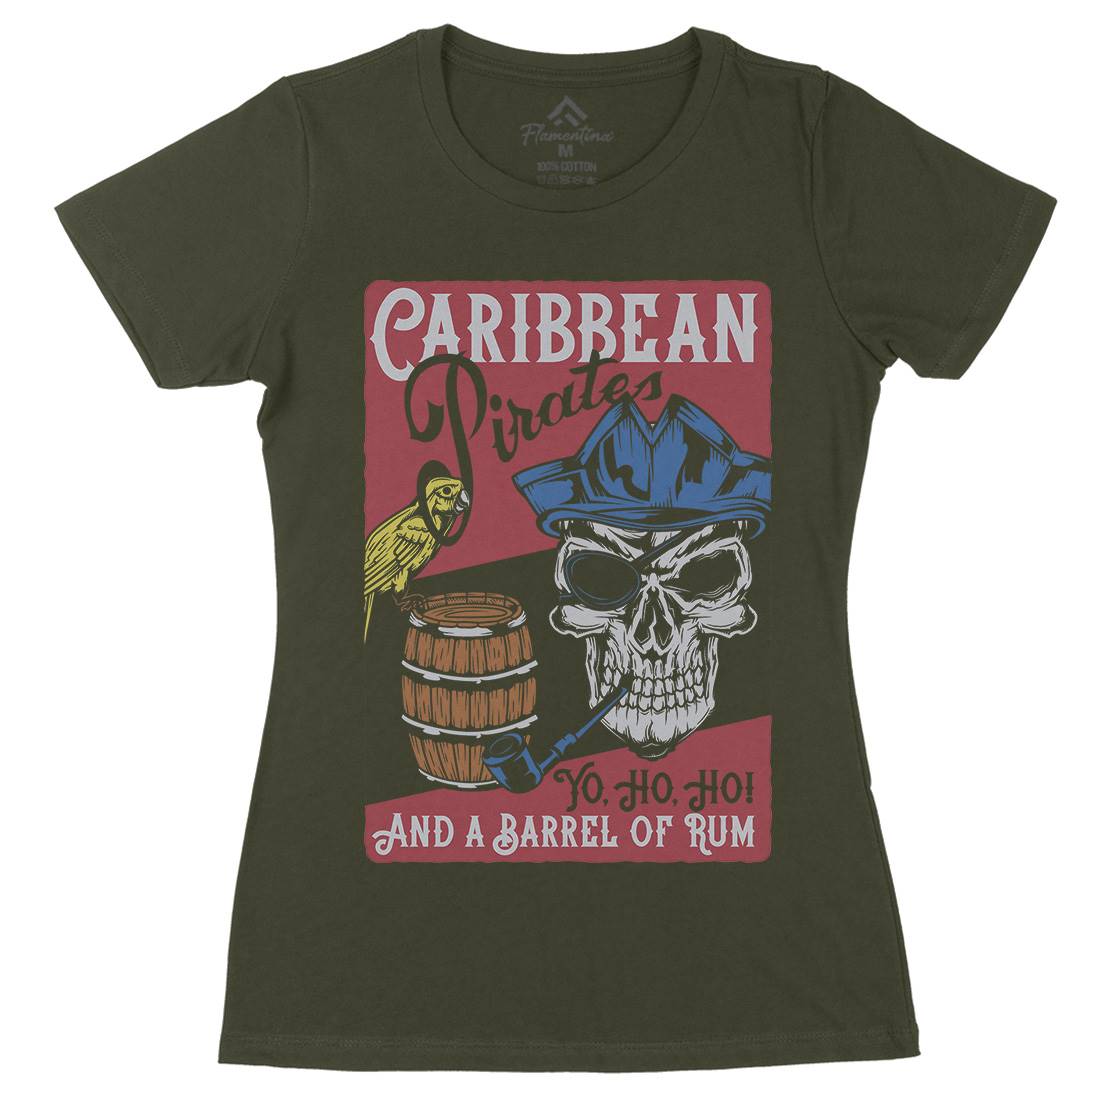 Pirate Womens Organic Crew Neck T-Shirt Navy B163